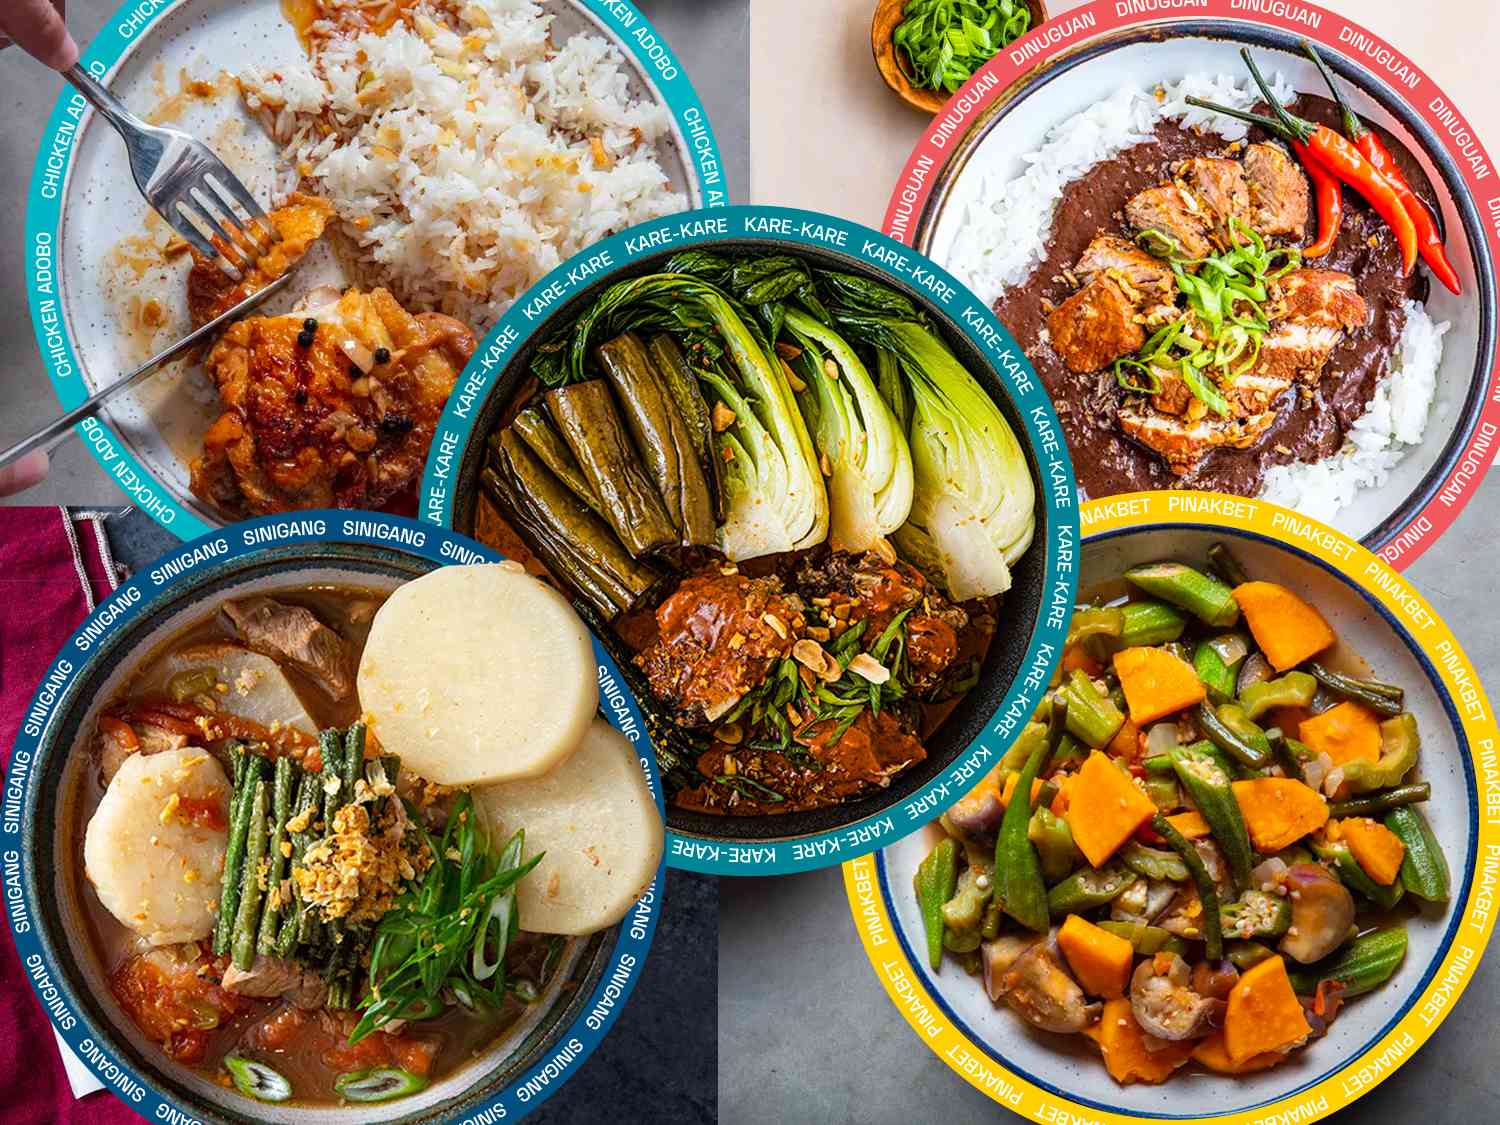 菲律宾汤和炖菜的拼贴，每道菜的名字都有图形叠加